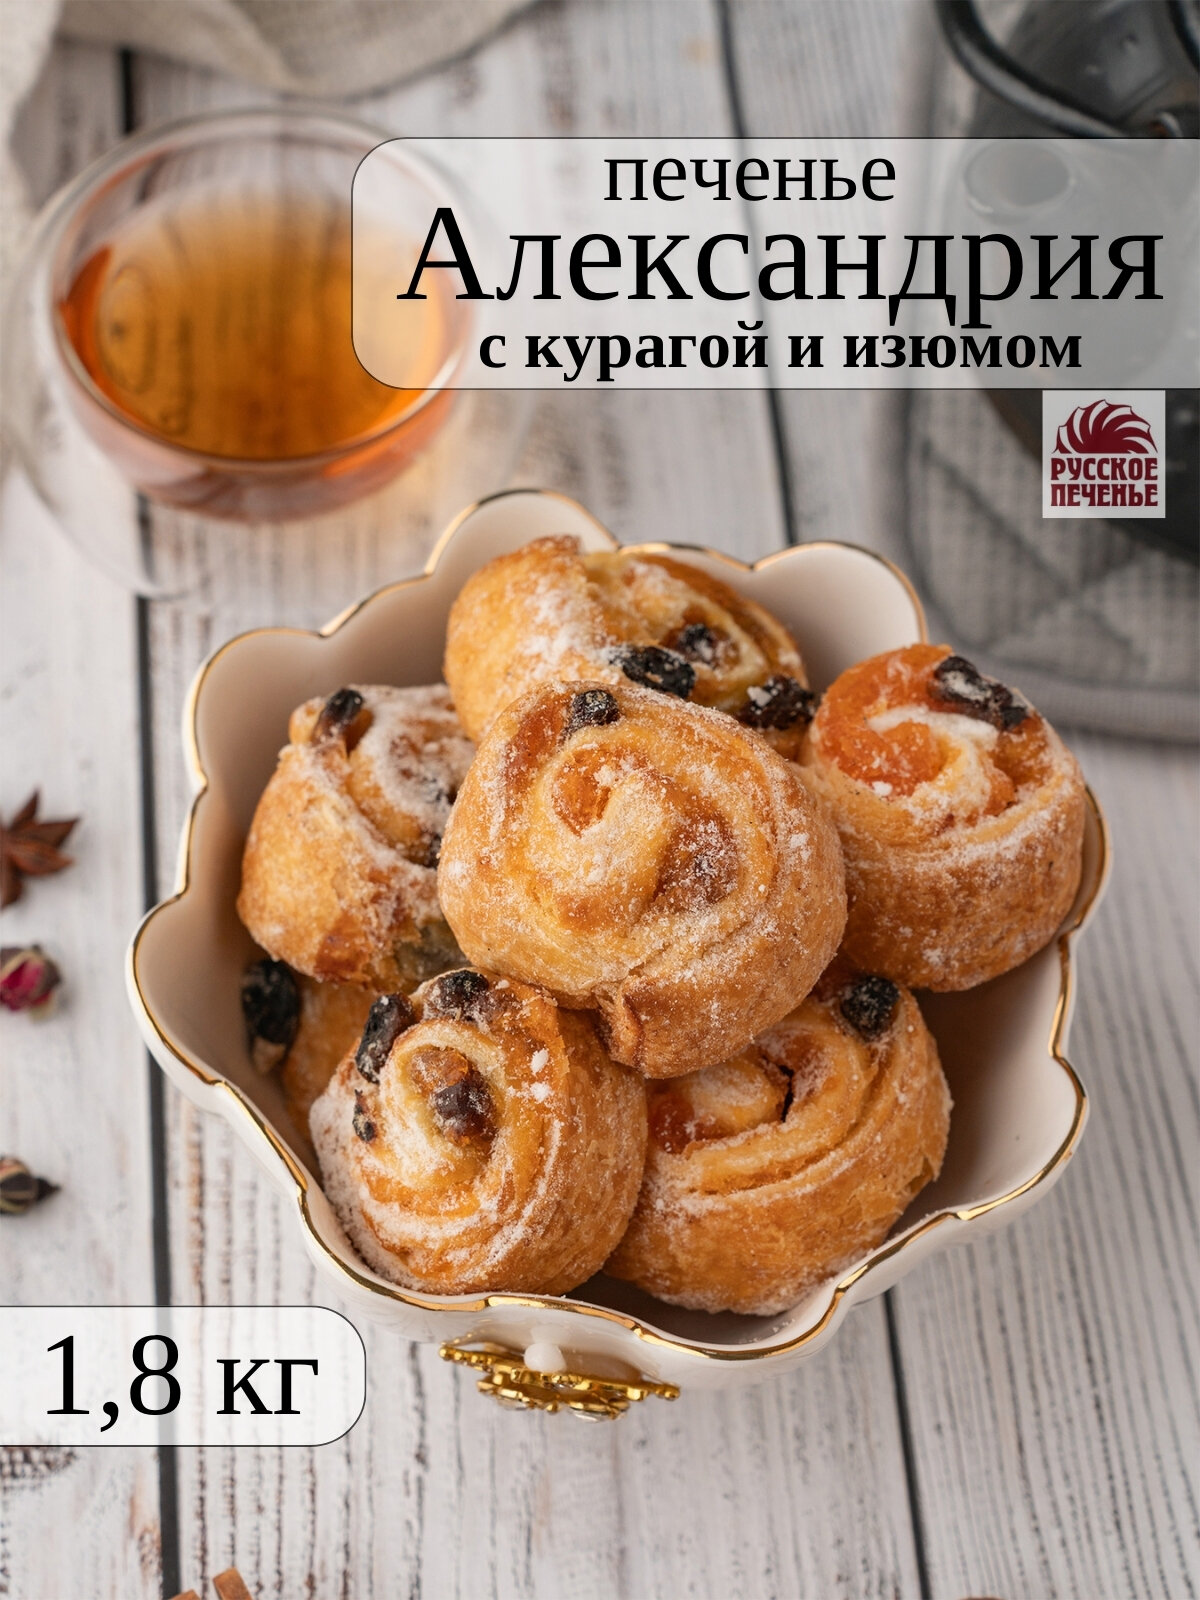 Печенье александрия рулетики с курагой и изюмом , 1,8 кг, Русское печенье